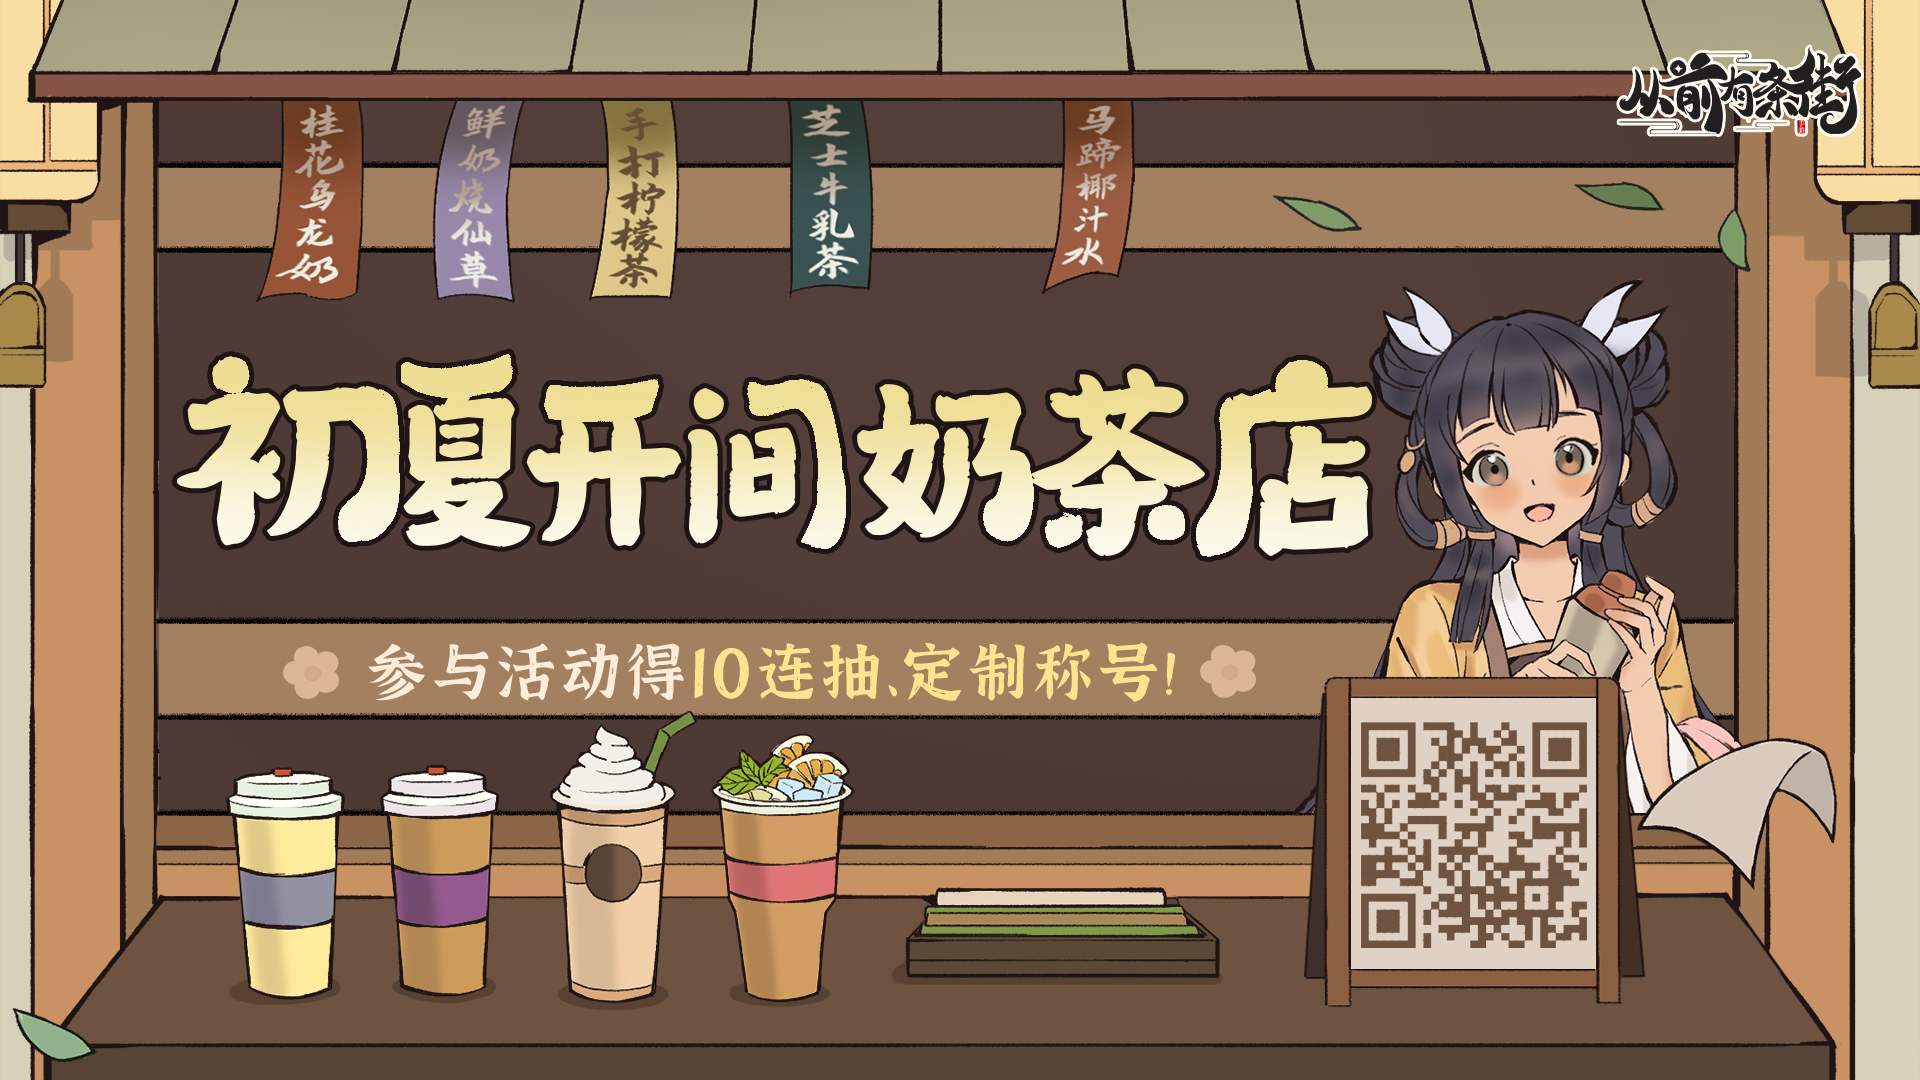 【有奖活动】「初夏开间奶茶店」H5活动上线，邀街主五一趣经营！